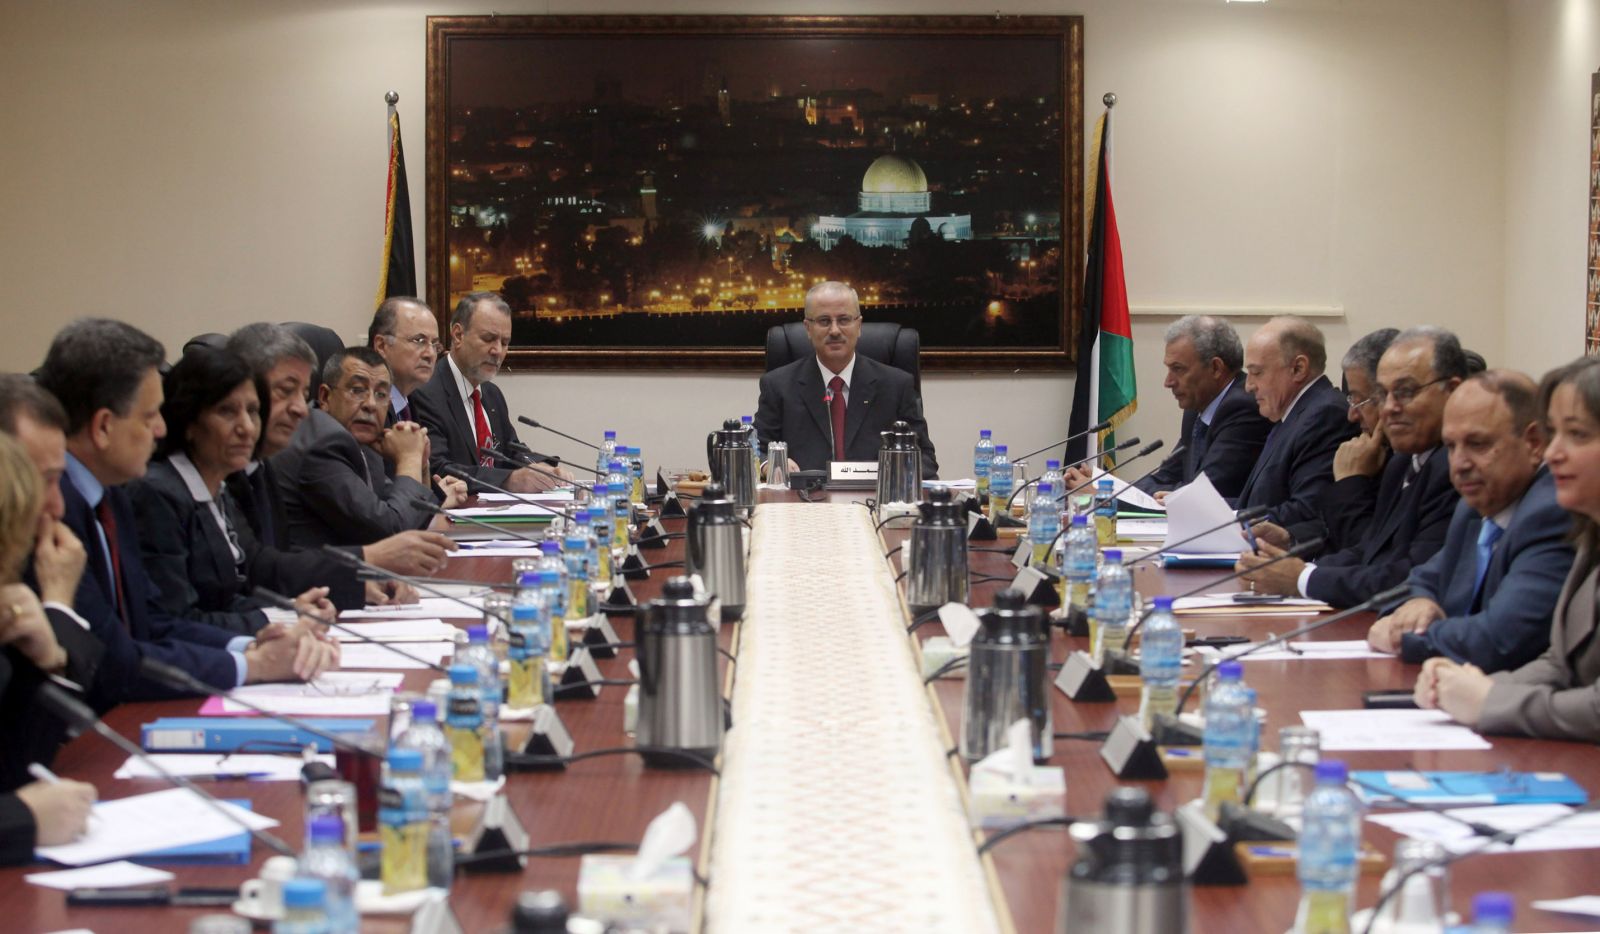 بناء على تعليمات الرئيس مجلس الوزراء يقرر إعادة 50 ميغا واط من كهرباء قطاع غزة